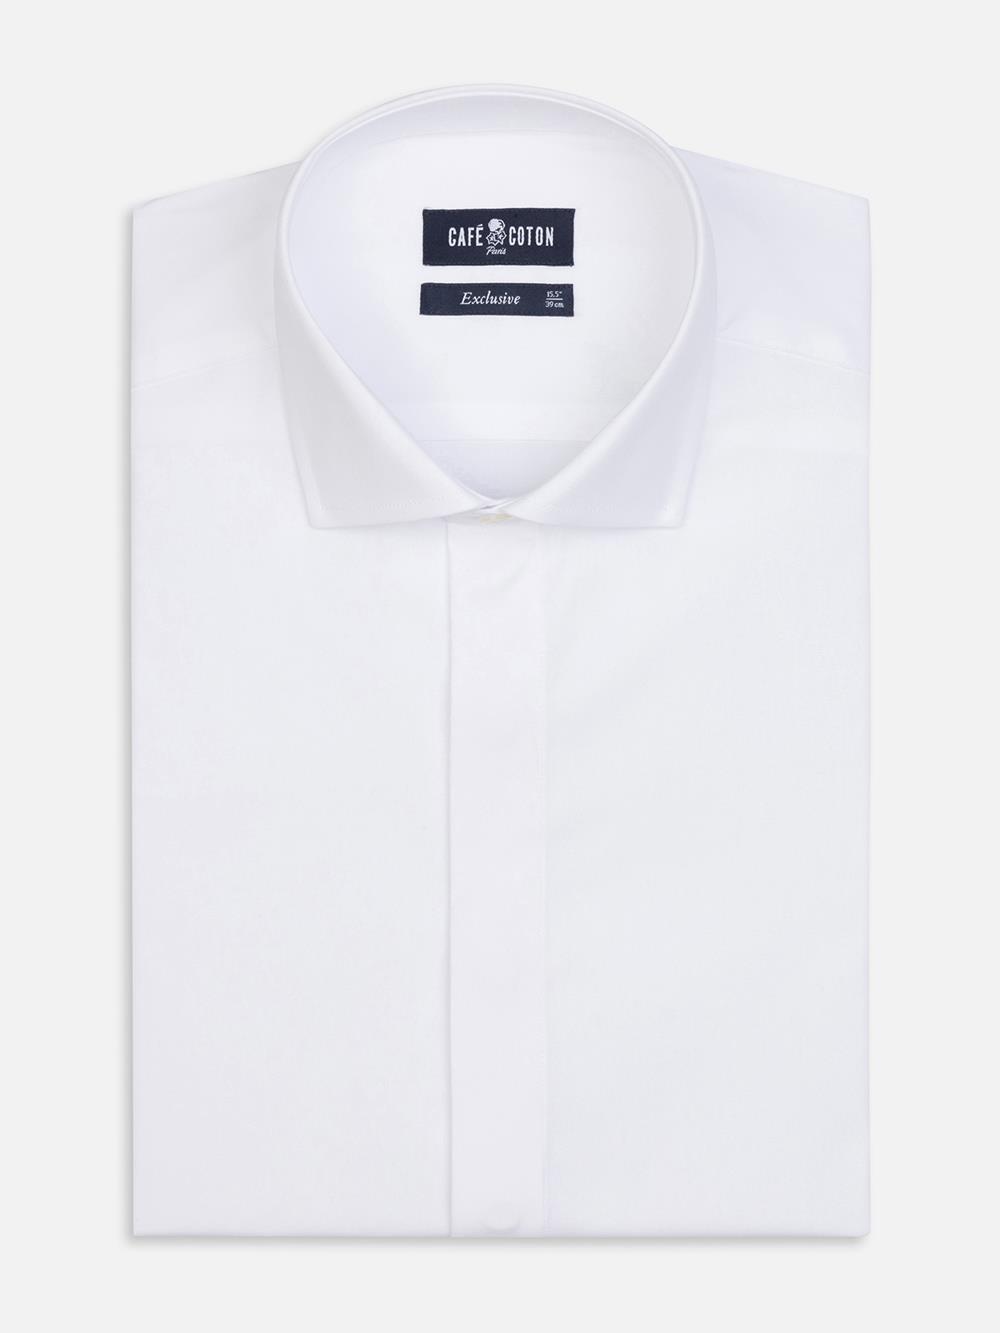 Tailliertes Hemd aus Pin Point weiß - Verdeckte Knopfleiste